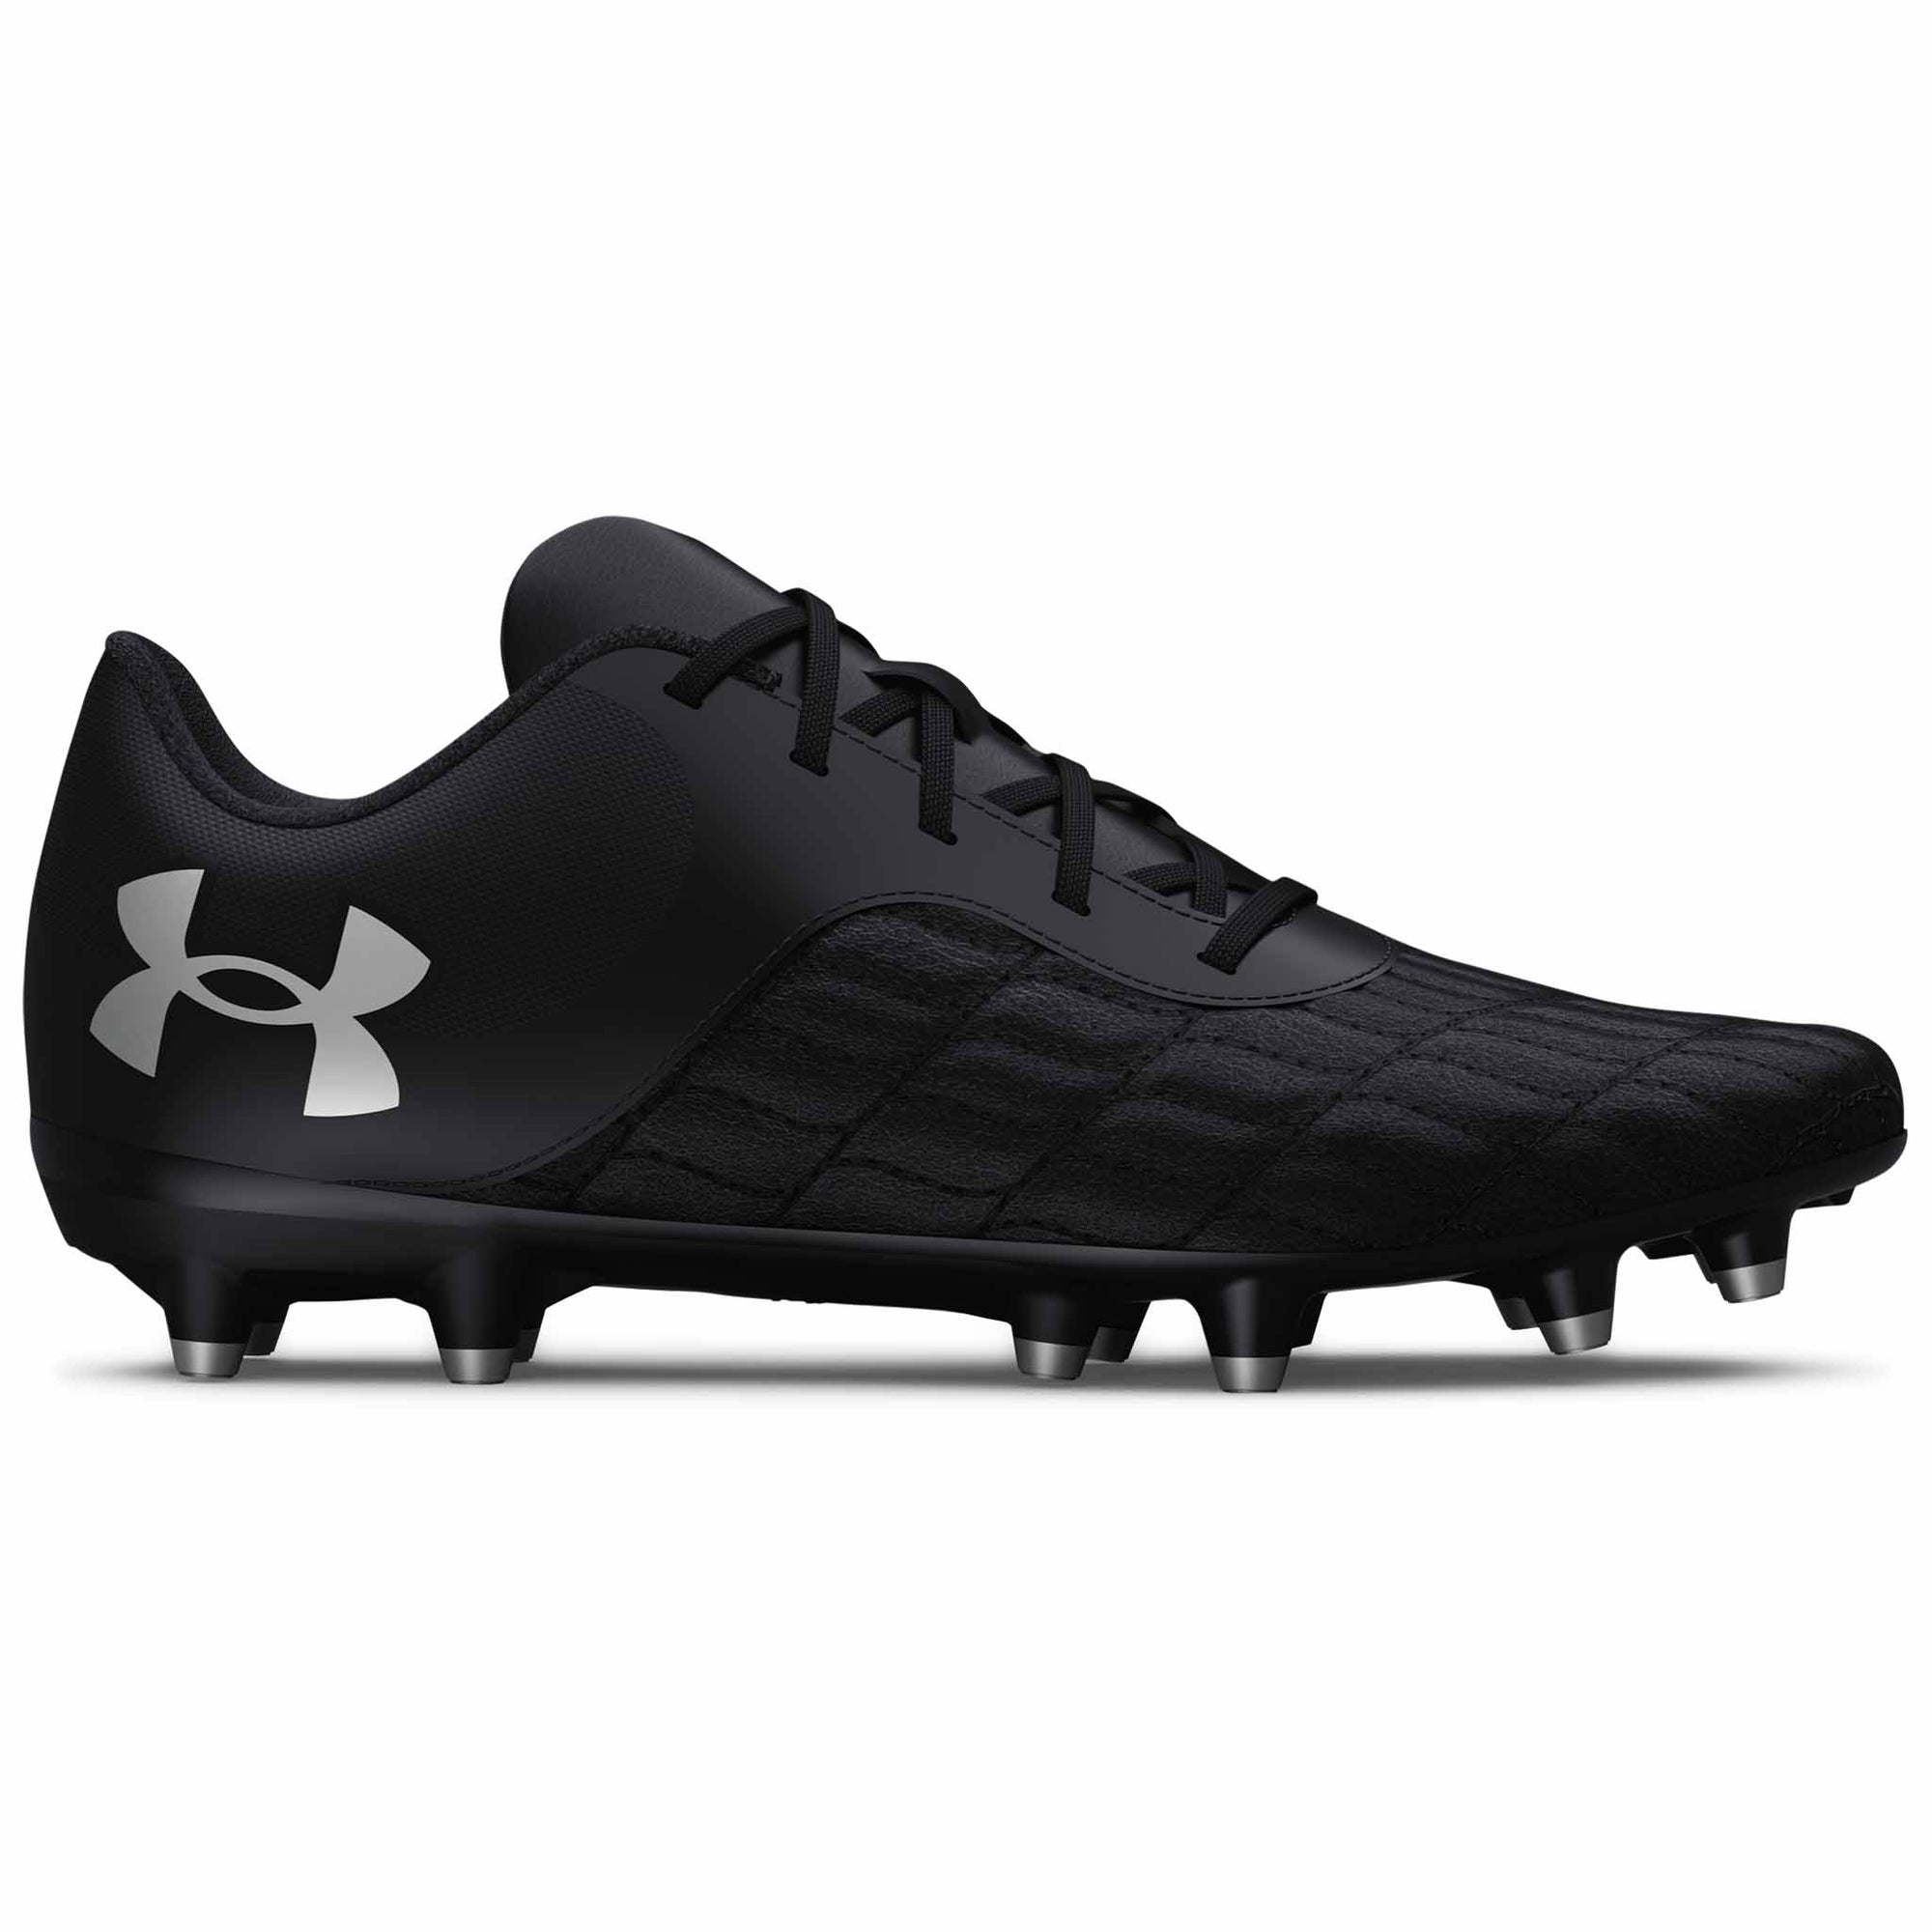 Under Armour Magnetico Select JR 3.0 FG souliers de soccer enfants - noir / noir / argent métallique